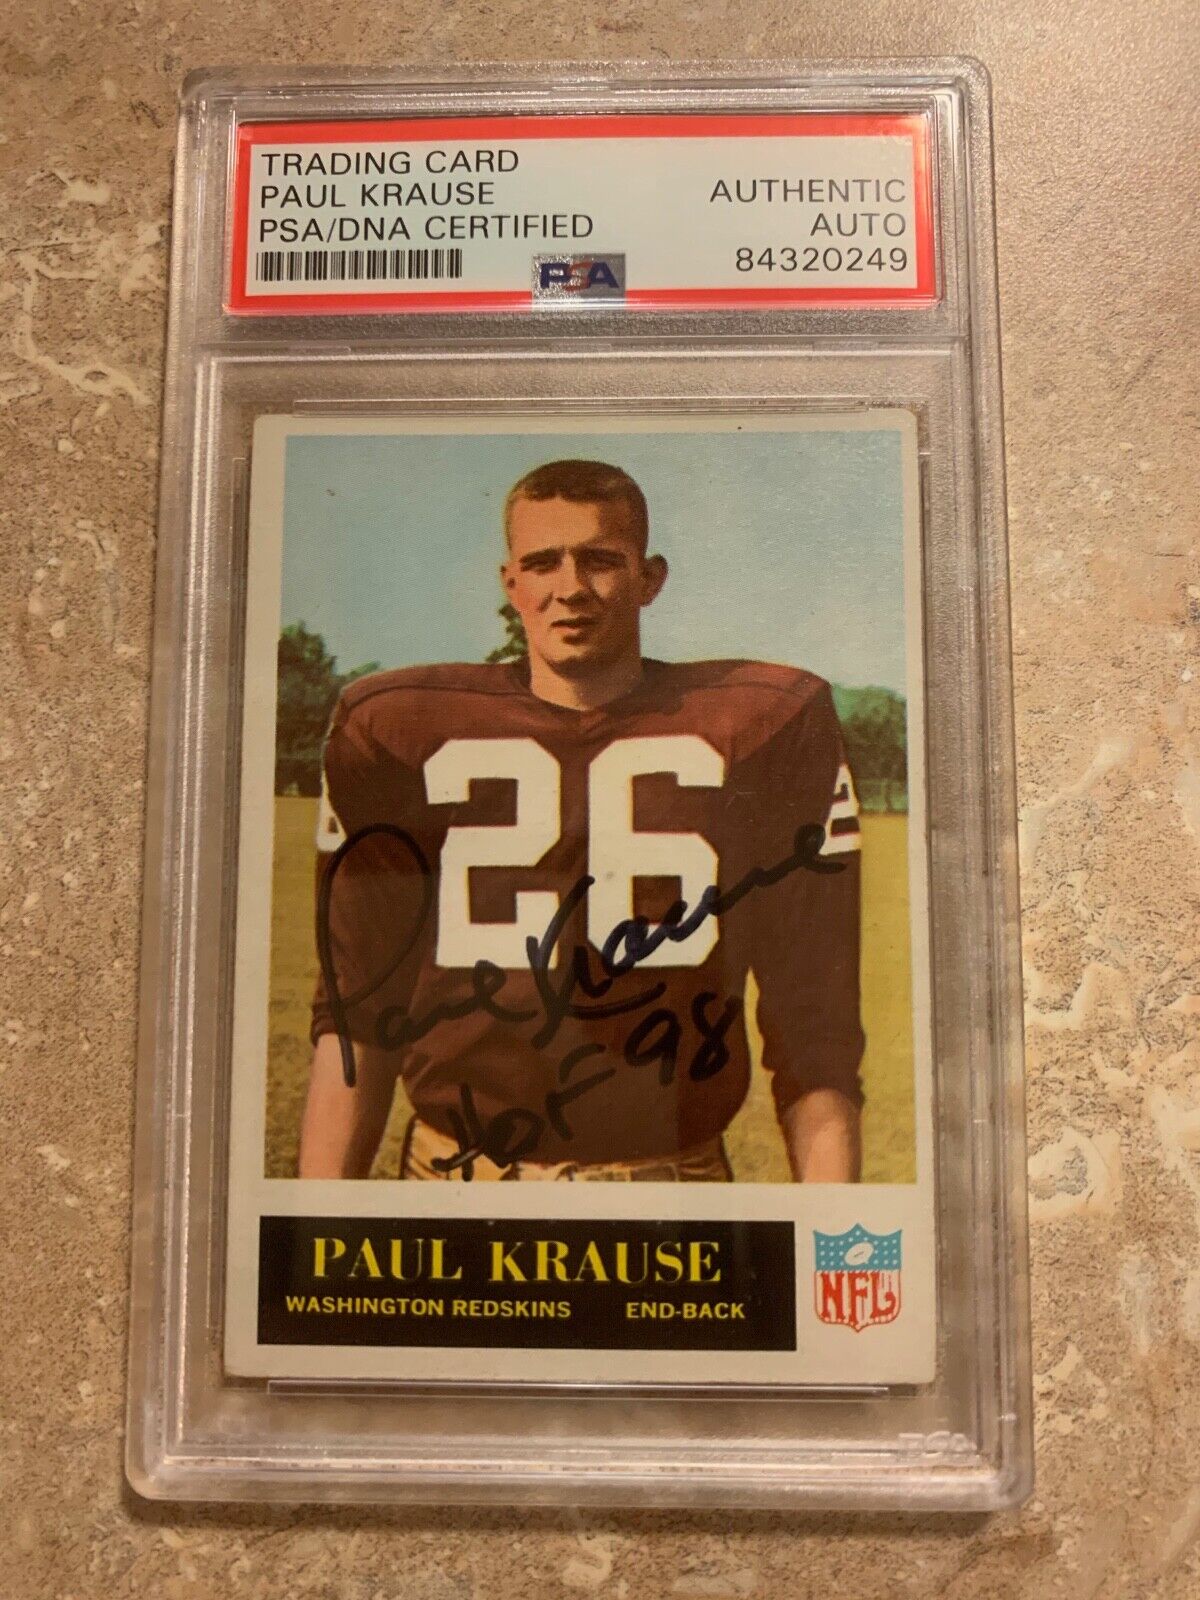 Paul Krause 1965 Philadelphia Rookie card Autographed 189 PSA slabbed